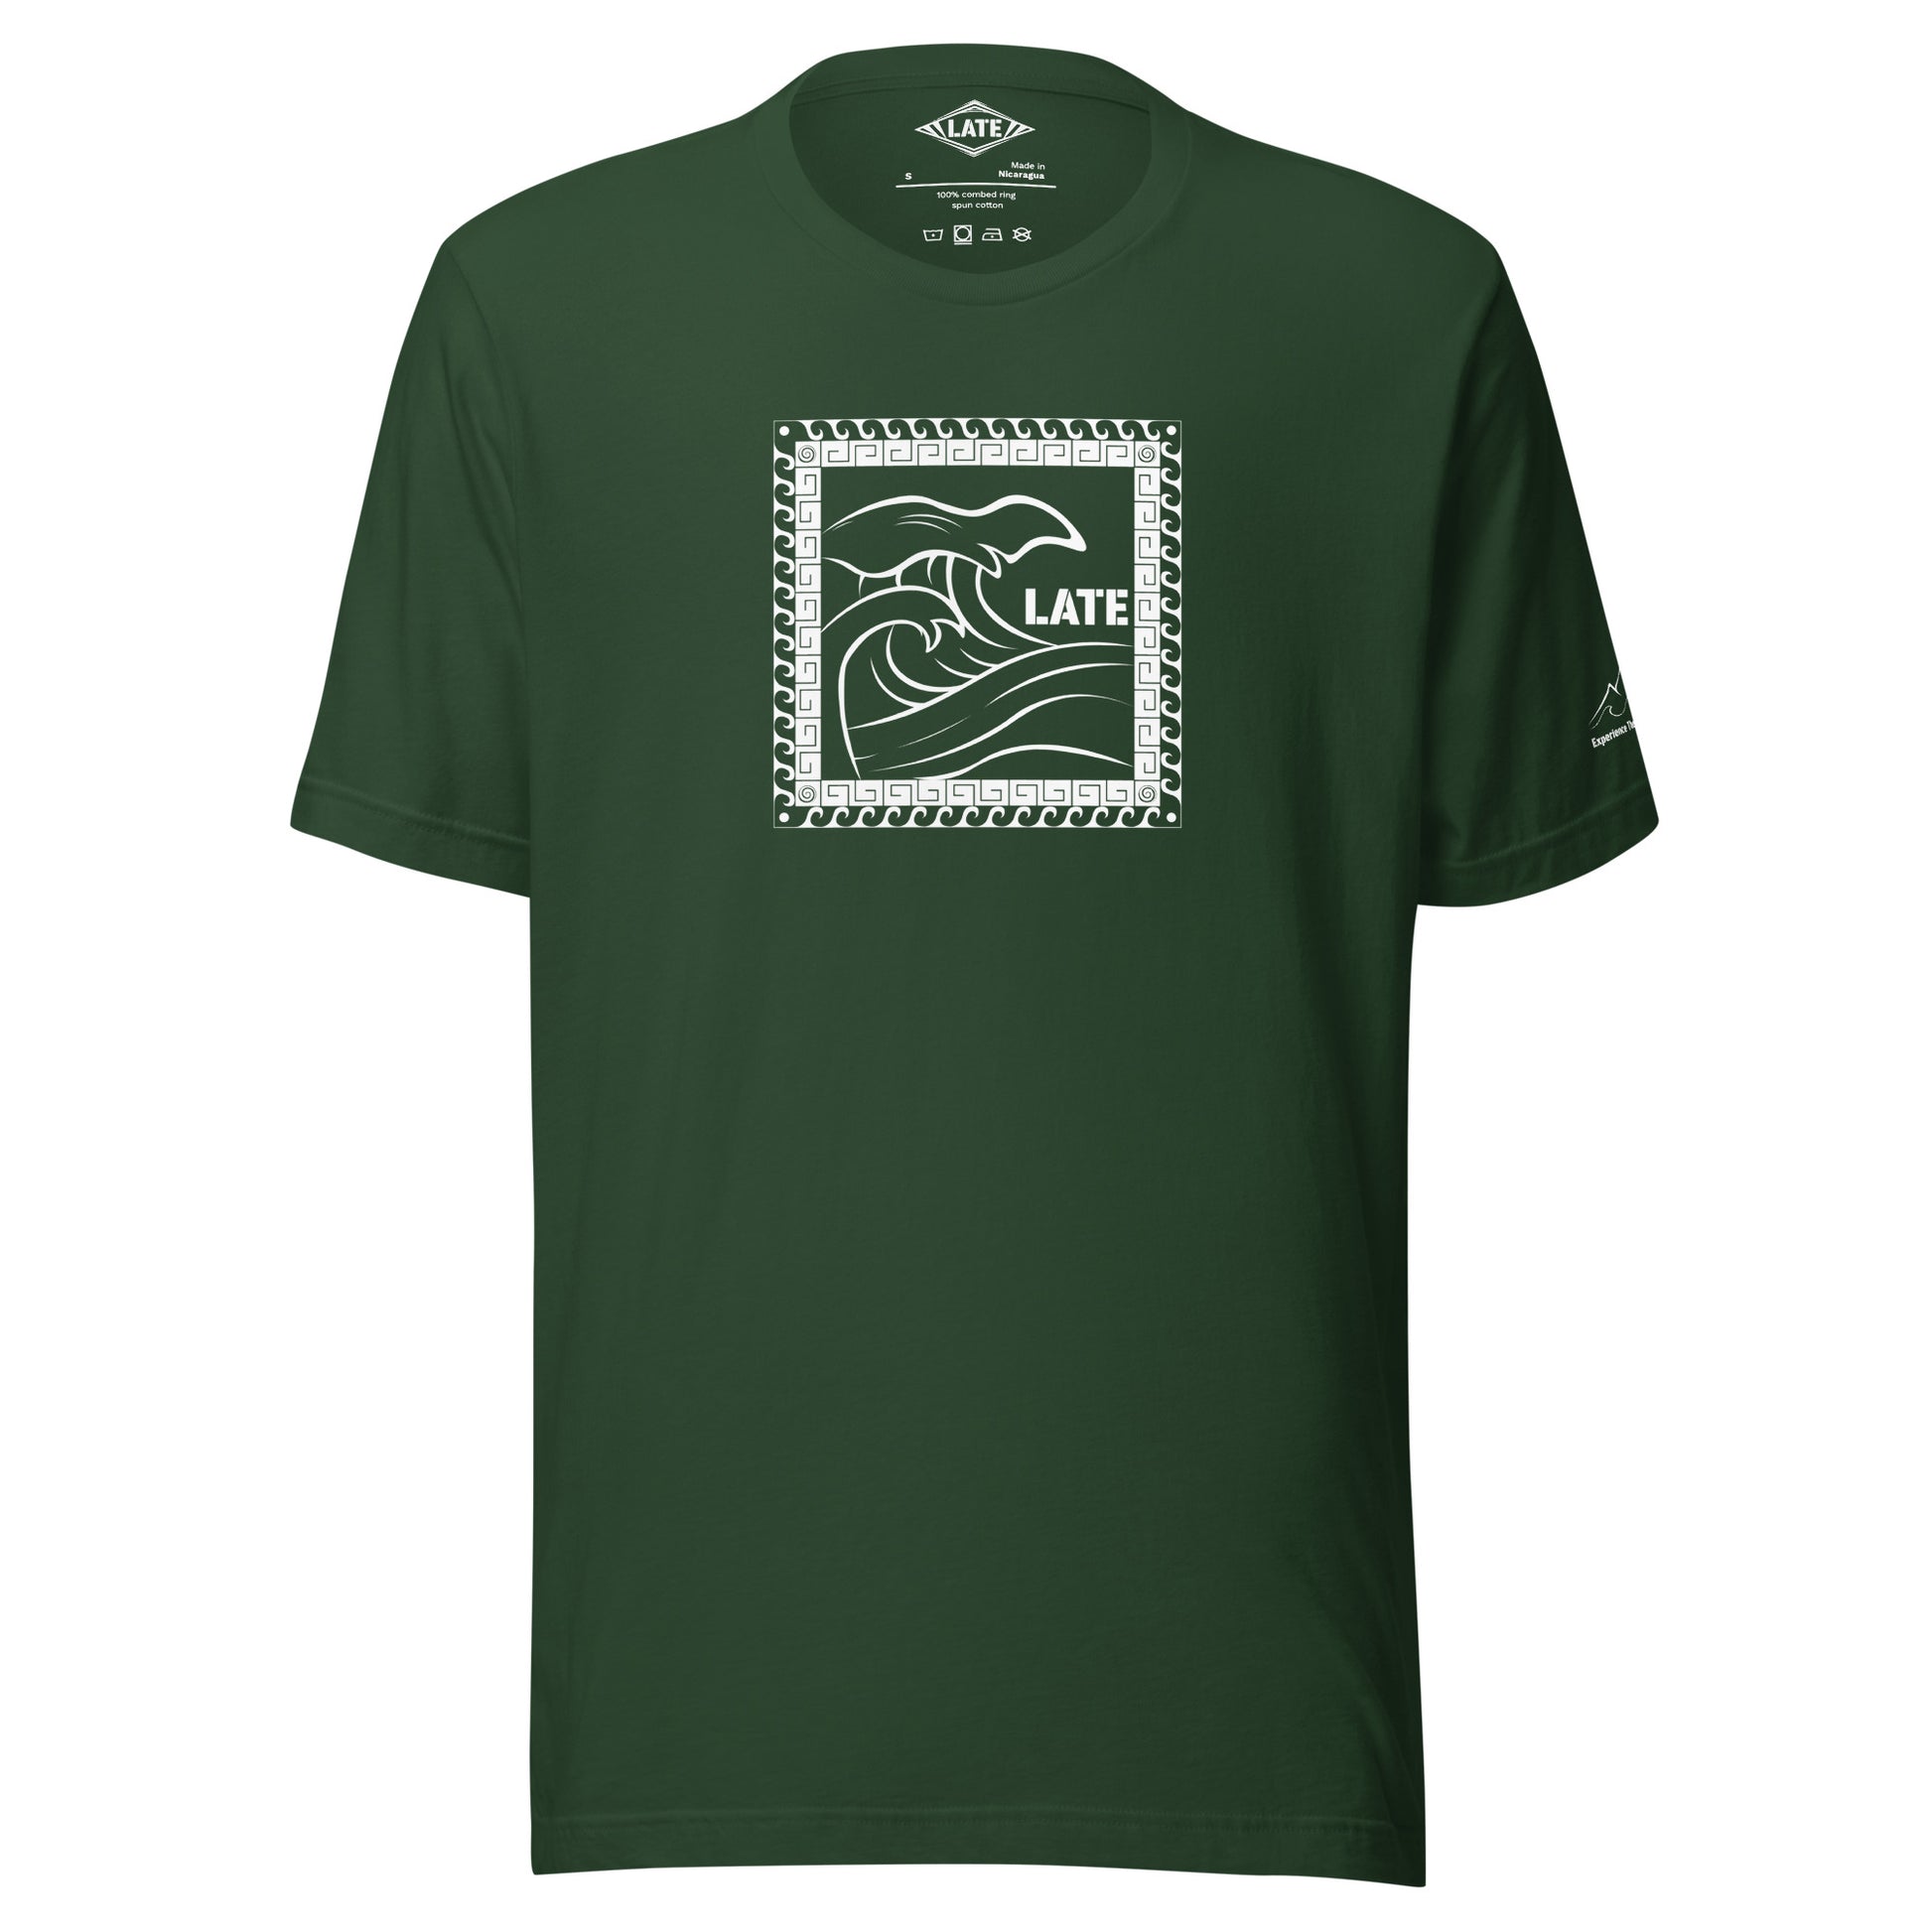 T-Shirt Tricky Wave design vague japonnaise et contour maori texte Late marque de vetement de surf. Tshirt unisex couleur vert